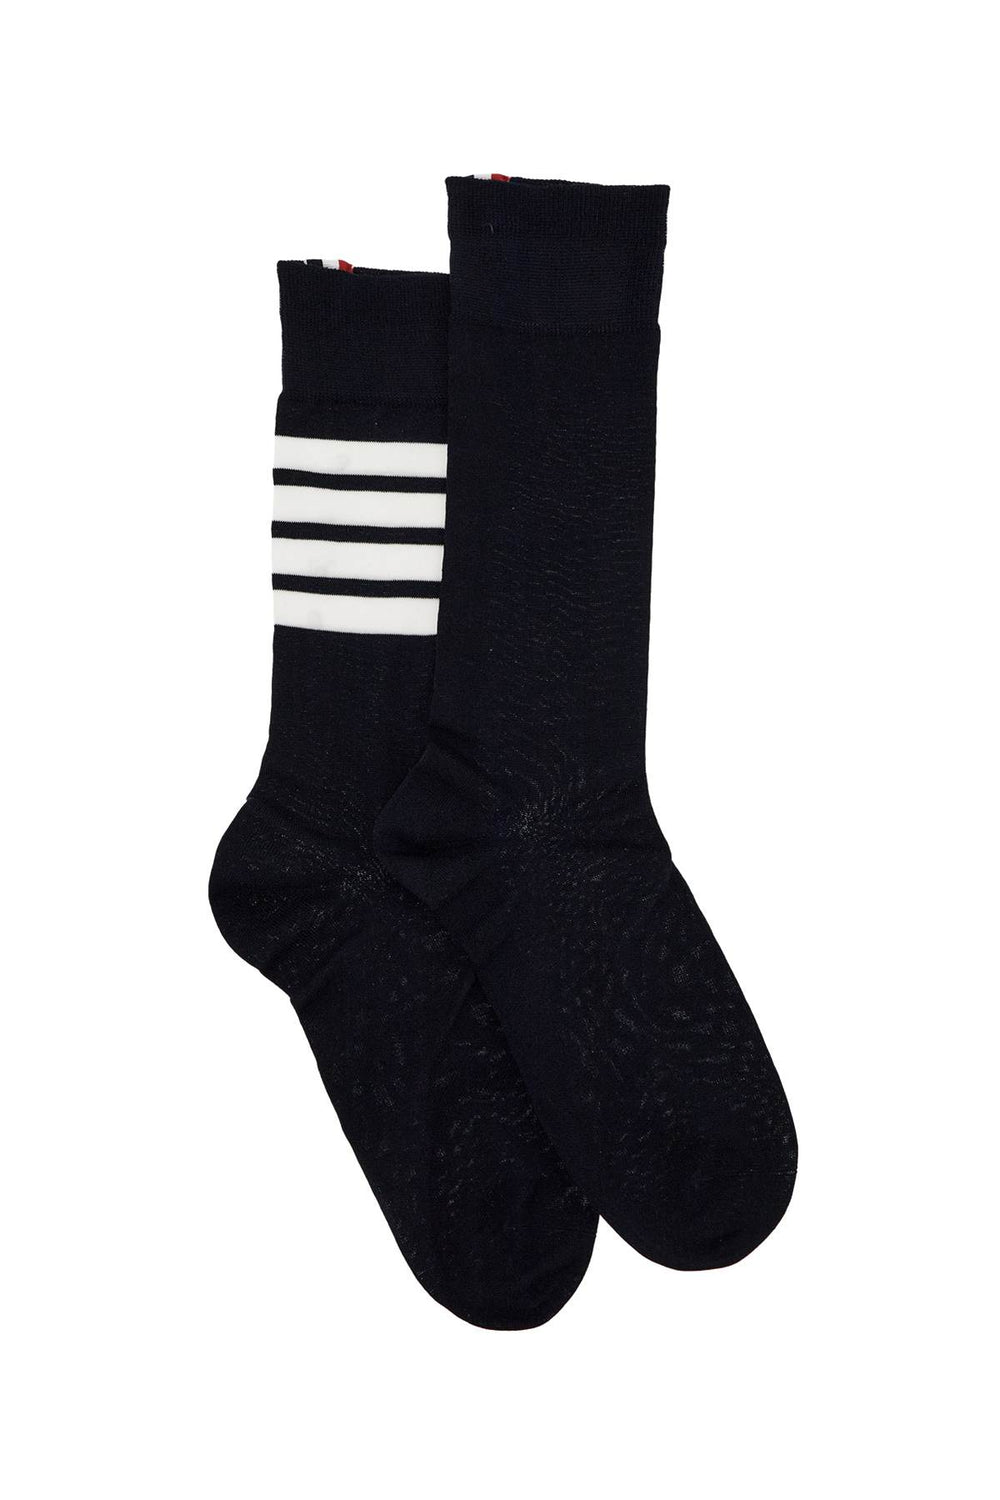 long 4-bar lightweight cotton socks-1